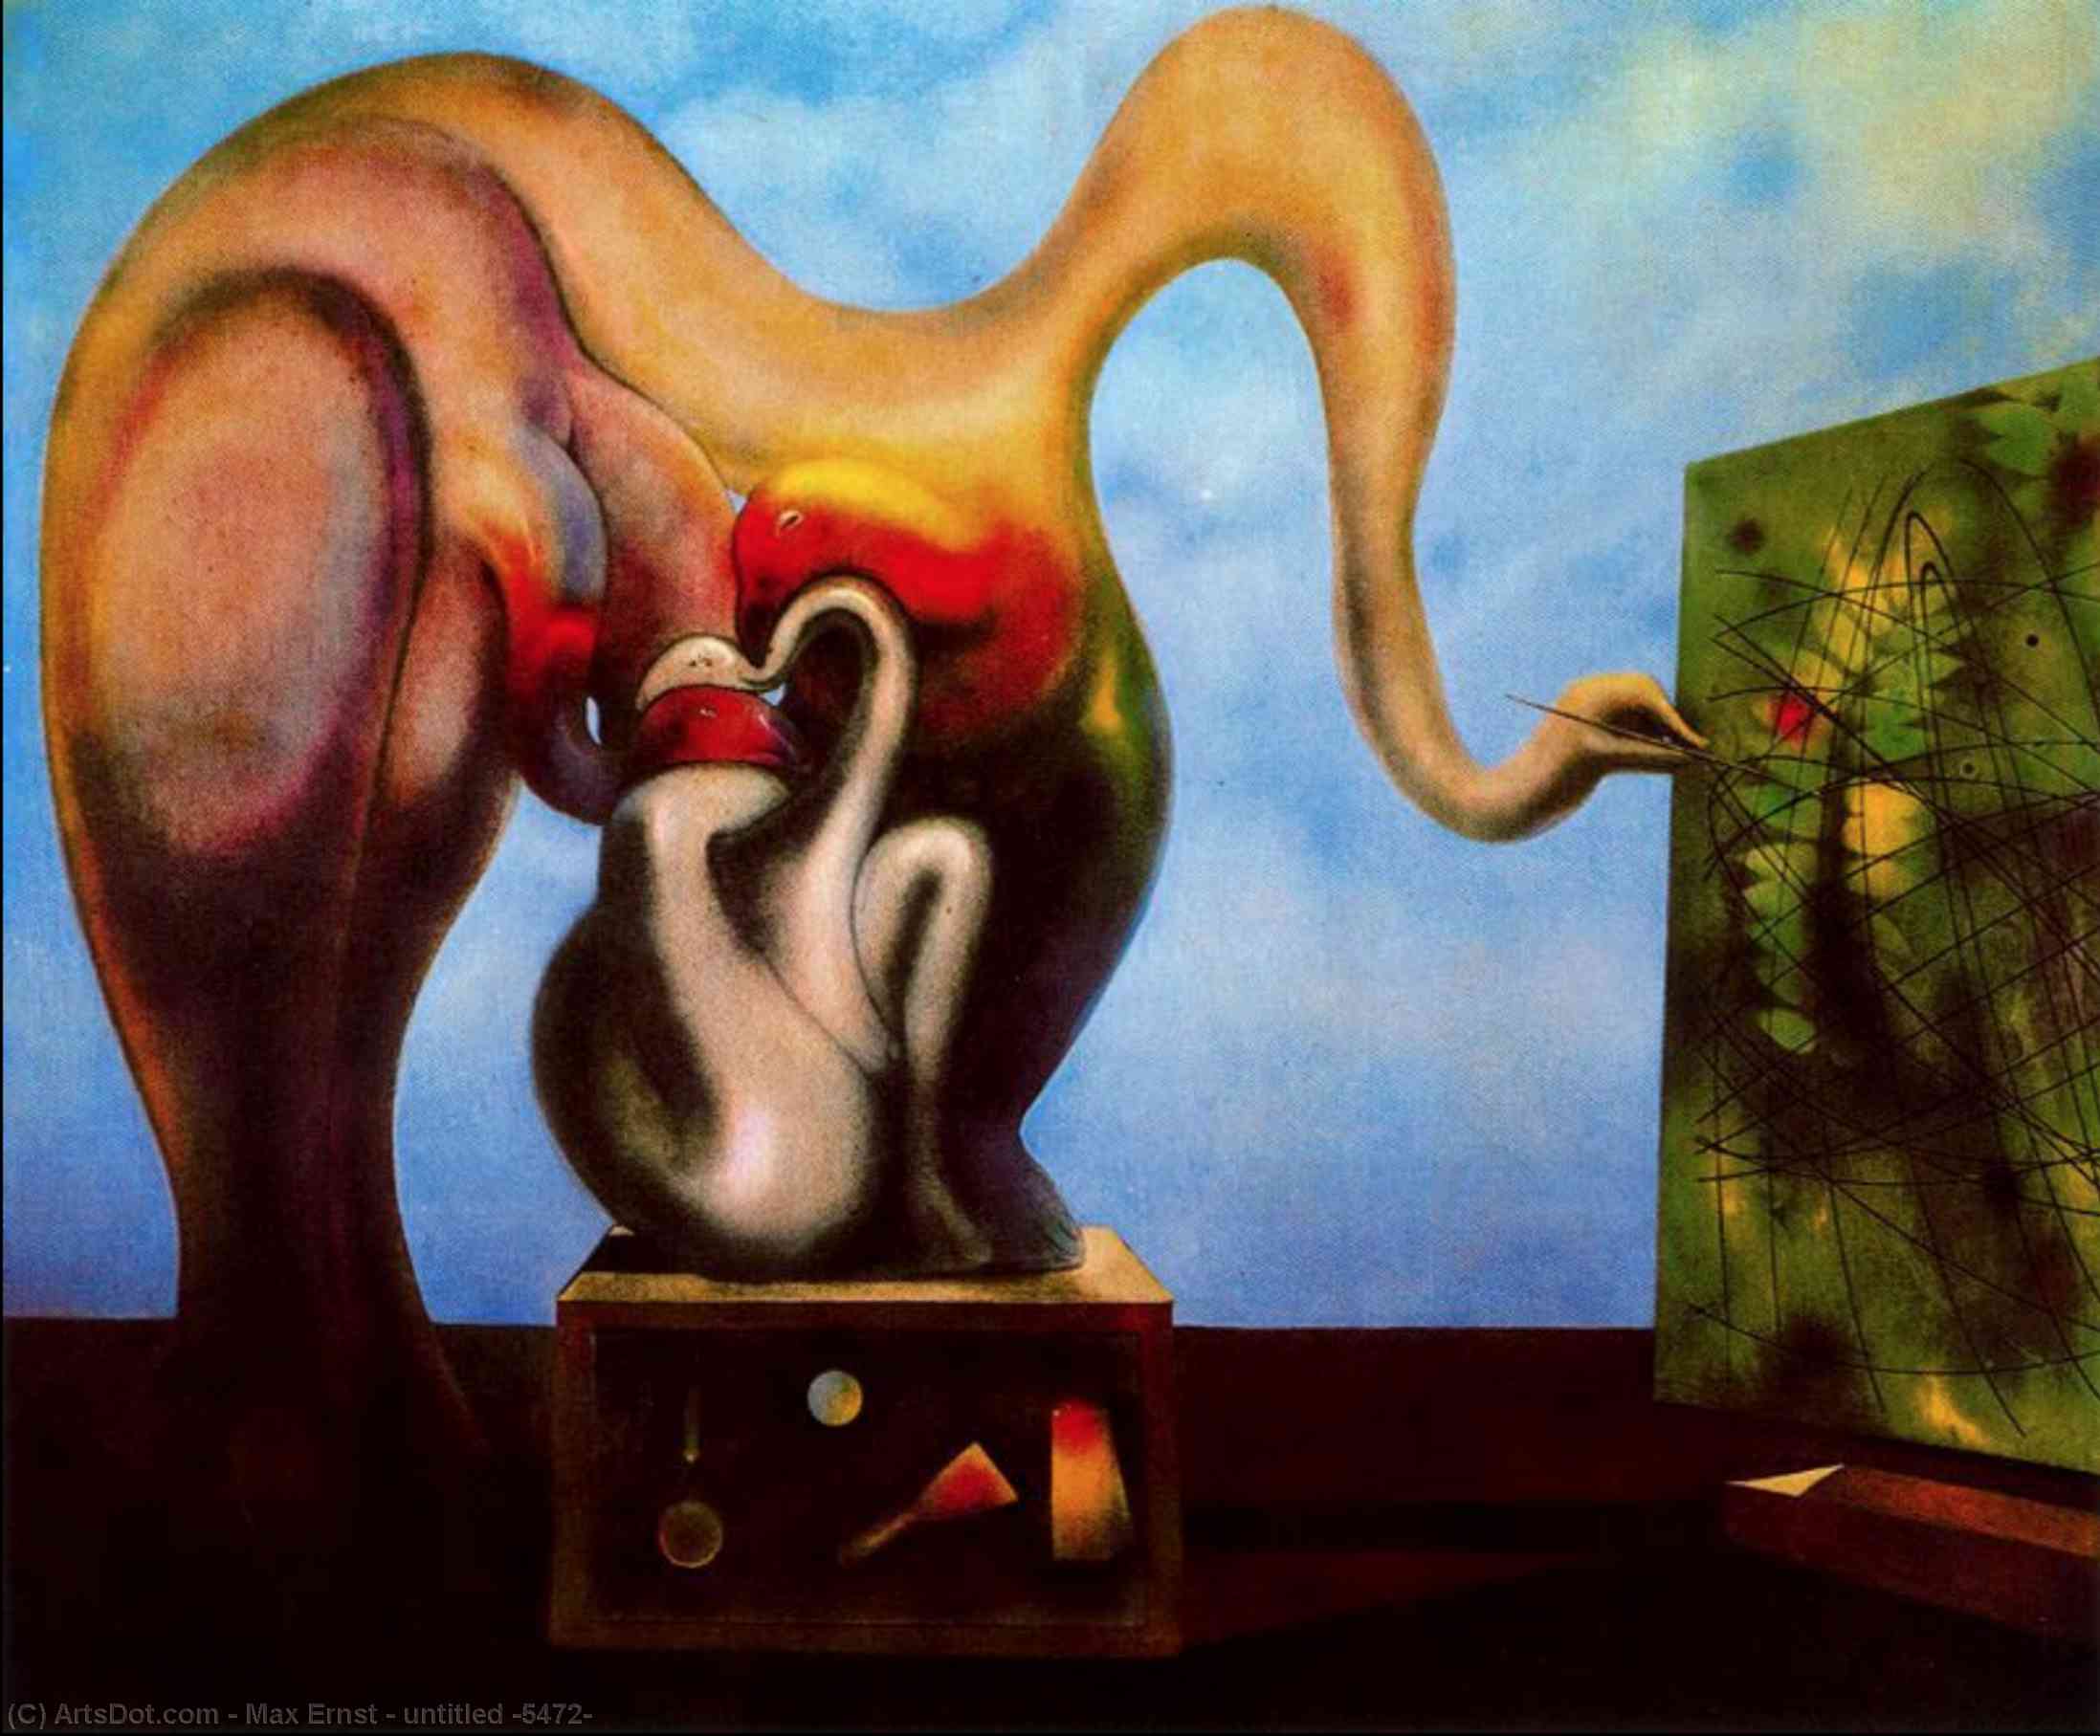 WikiOO.org - Εγκυκλοπαίδεια Καλών Τεχνών - Ζωγραφική, έργα τέχνης Max Ernst - untitled (5472)